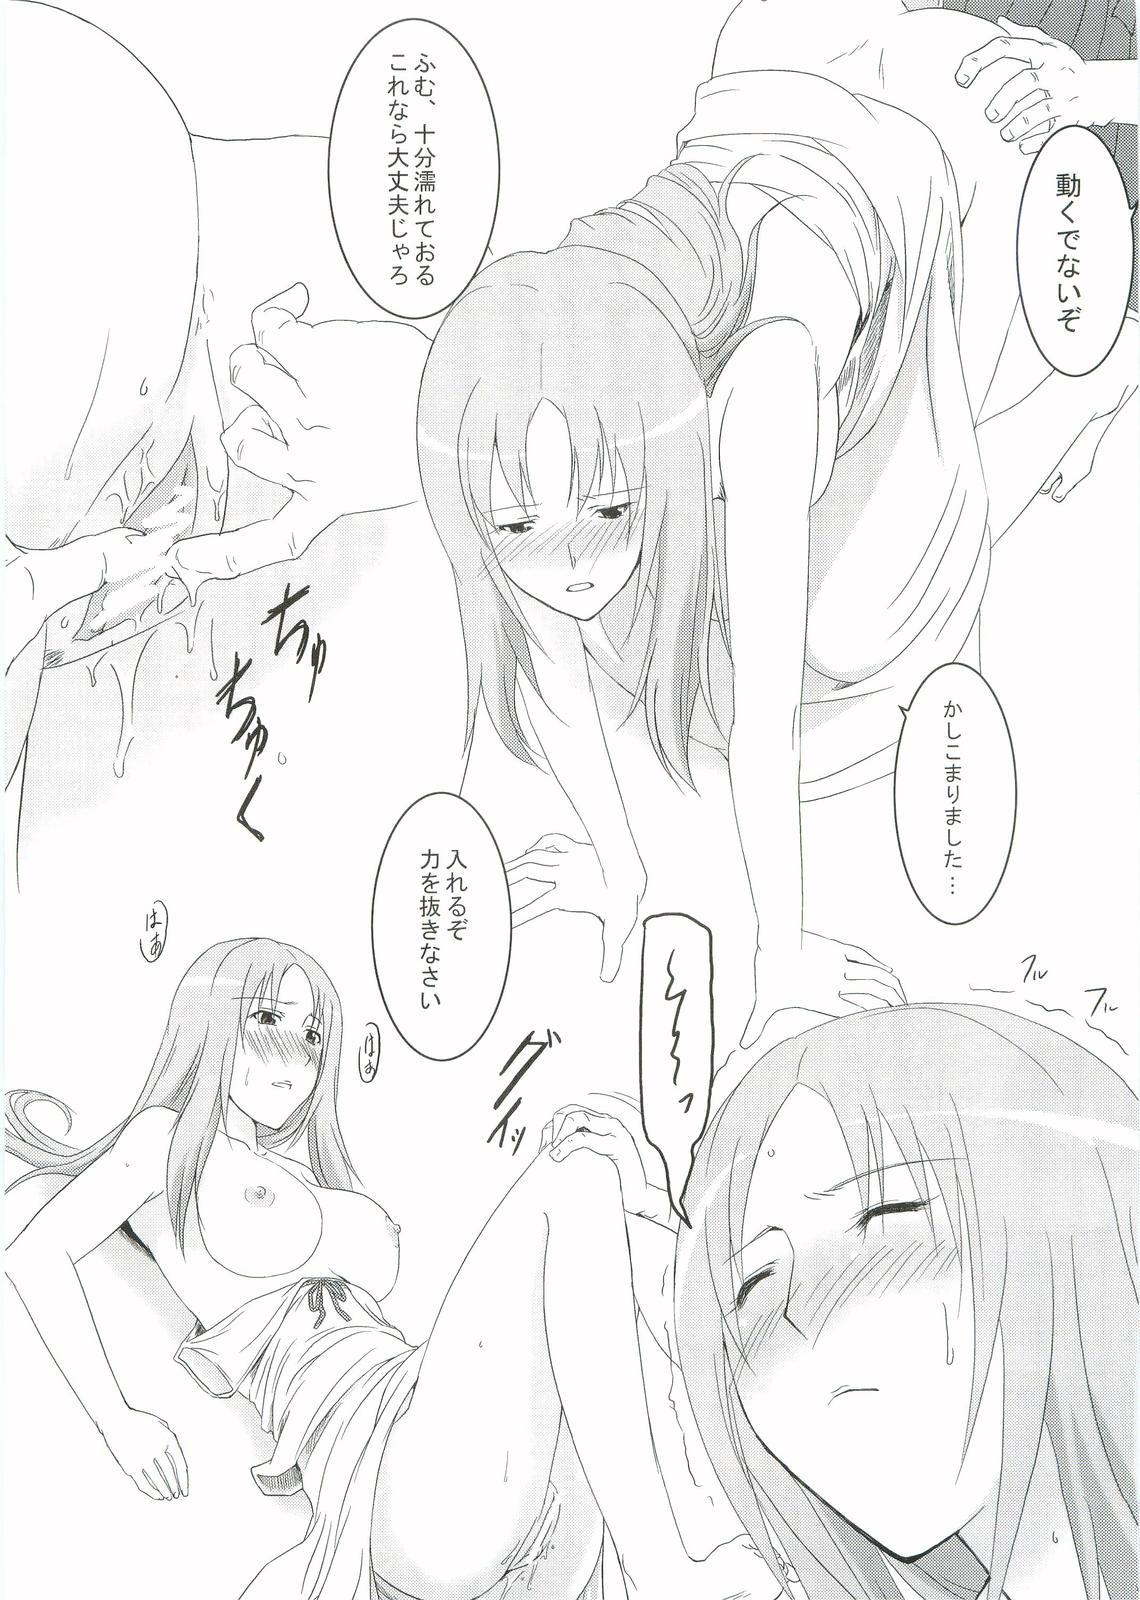 Boobies Kouhukuya no Ehon Gokujo 2 - Gokujou seitokai Mistress - Page 6